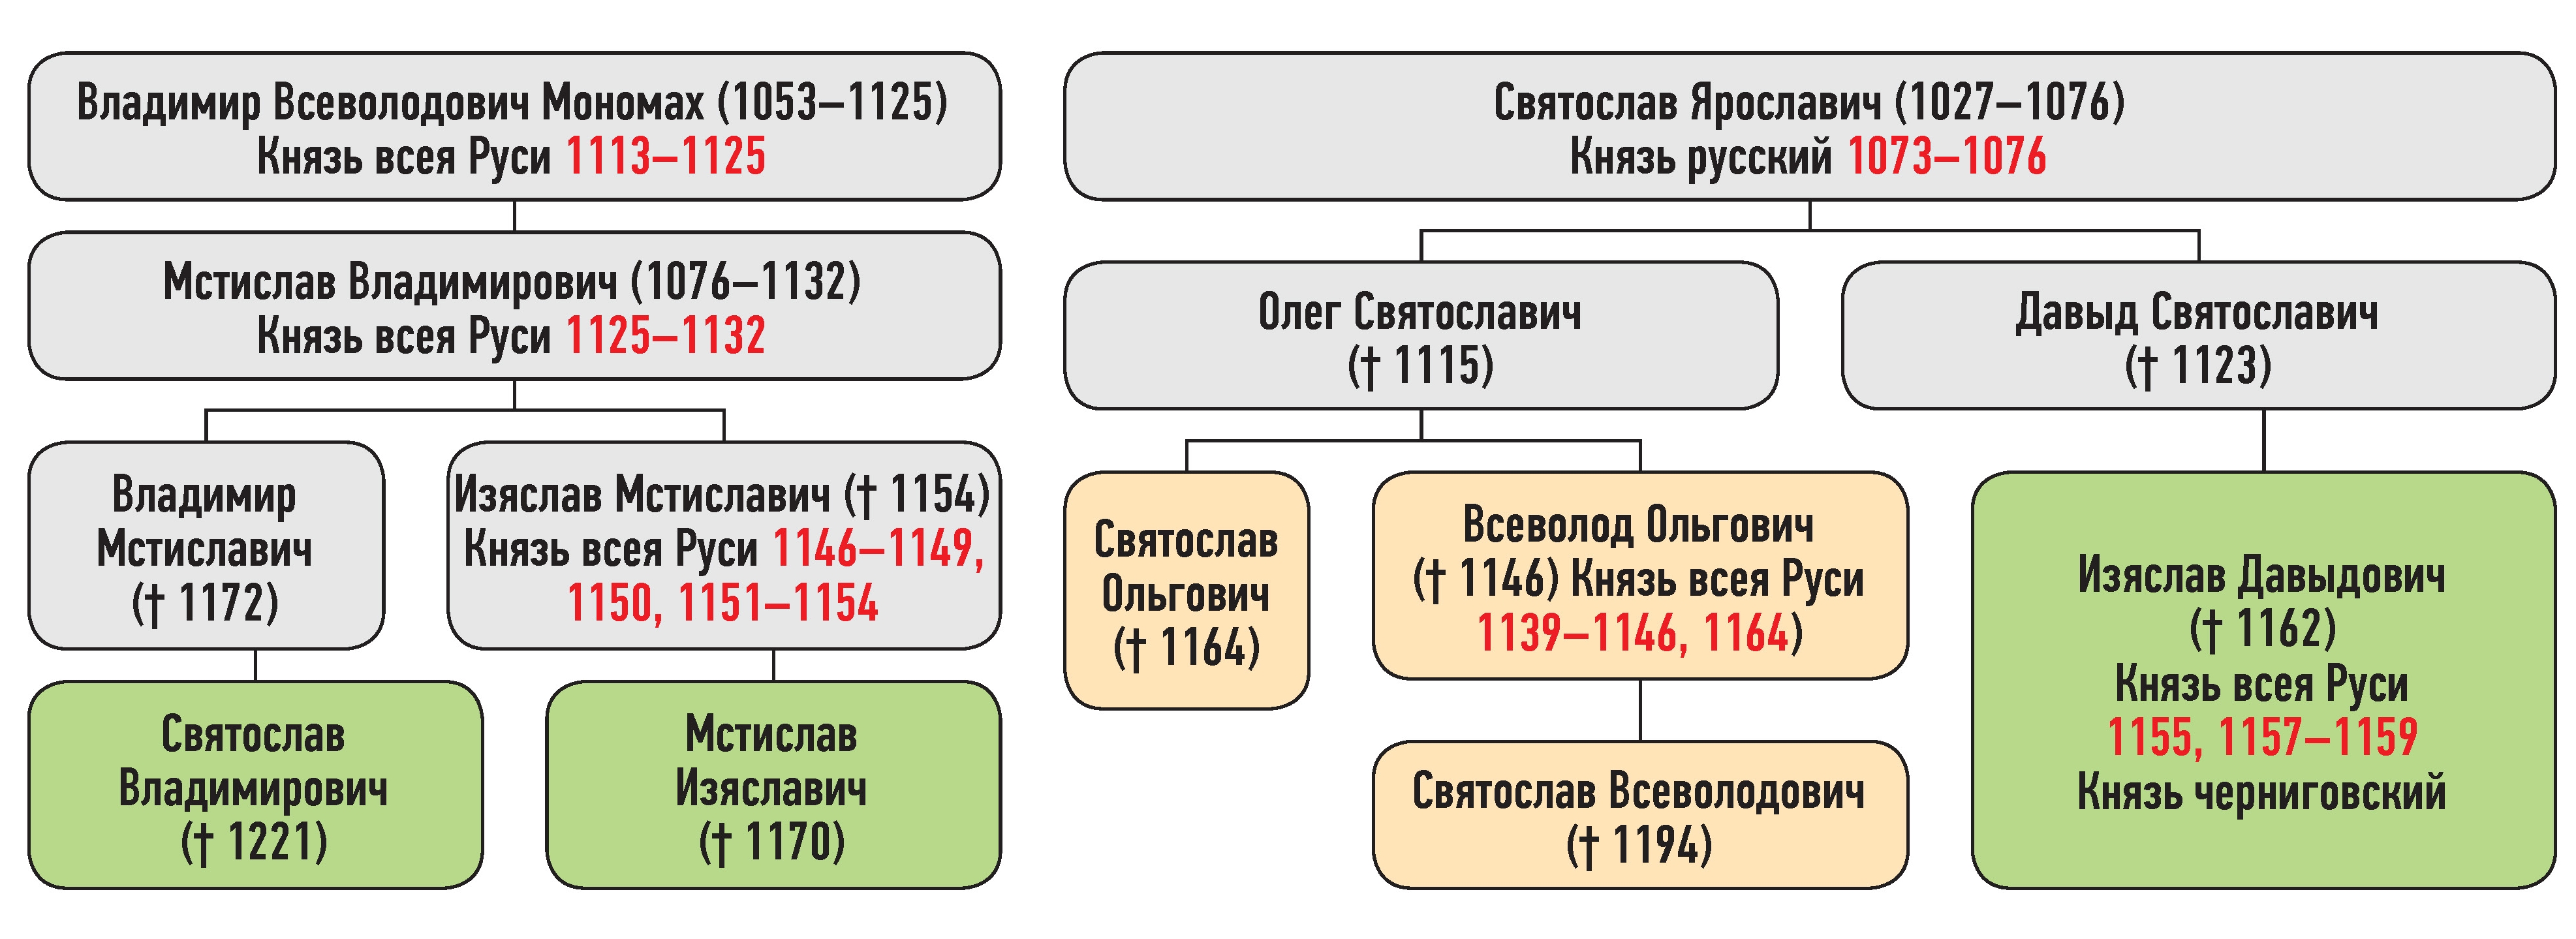 Генеалогическая схема к усобице Святослава Ольговича и Изяслава Давыдовича в мае 1157 г.